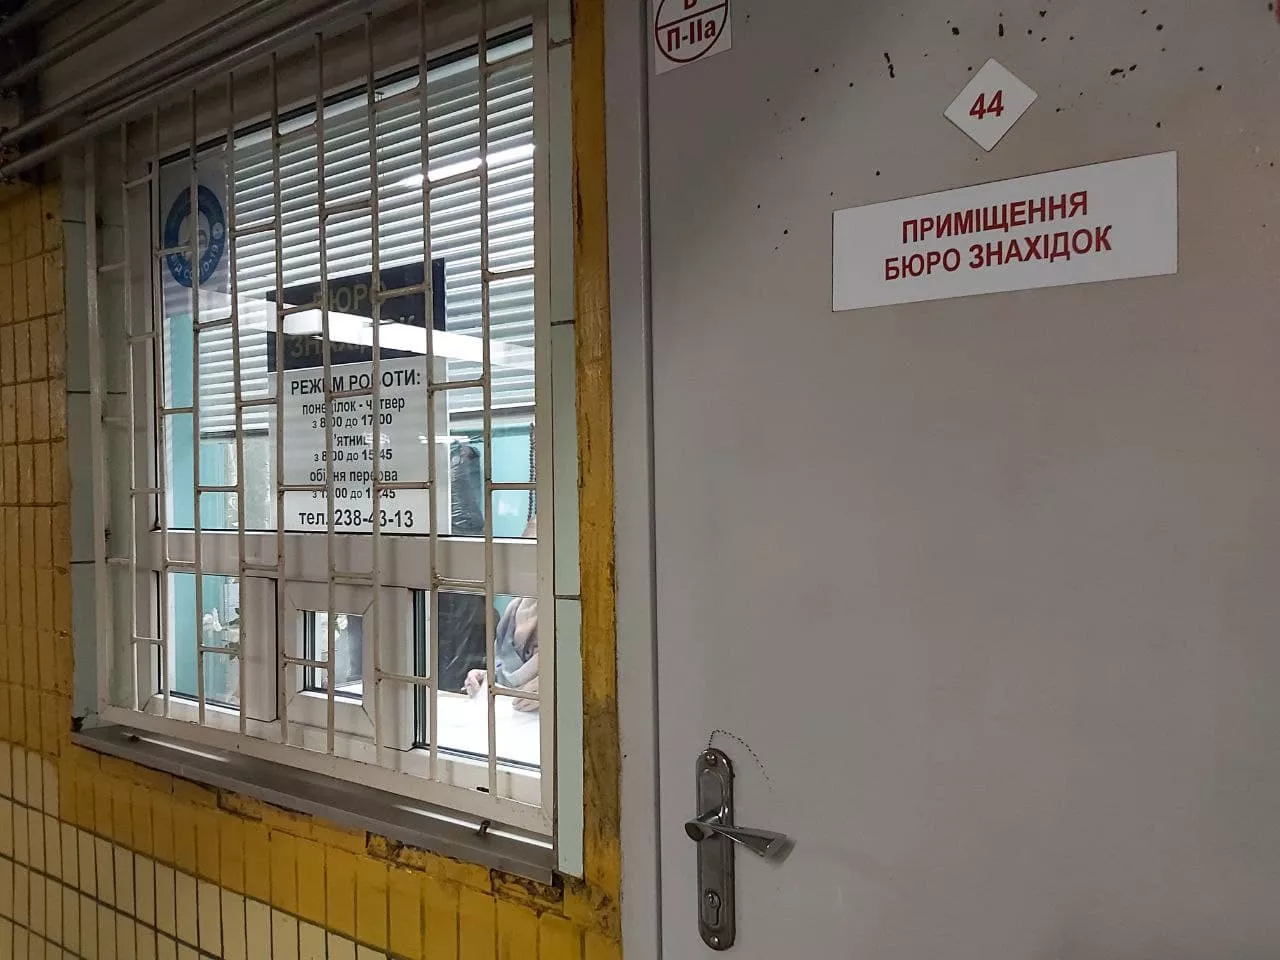 Бюро находок киевского метрополитена находиться в подземном переходе станции "Нивки" / фото "Сегодня"